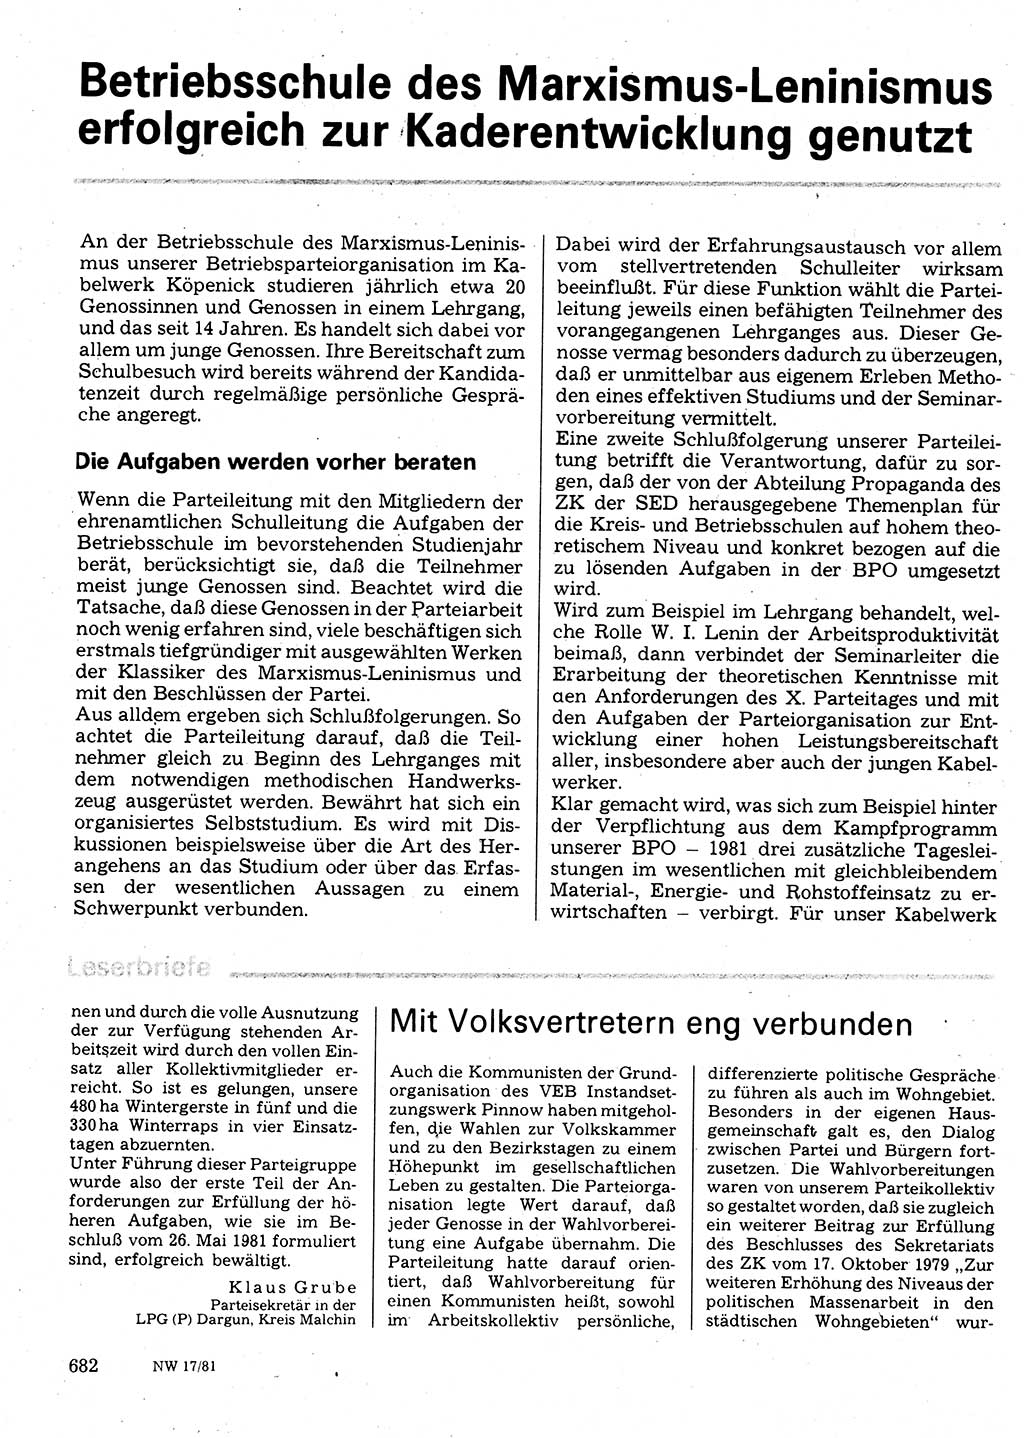 Neuer Weg (NW), Organ des Zentralkomitees (ZK) der SED (Sozialistische Einheitspartei Deutschlands) für Fragen des Parteilebens, 36. Jahrgang [Deutsche Demokratische Republik (DDR)] 1981, Seite 682 (NW ZK SED DDR 1981, S. 682)